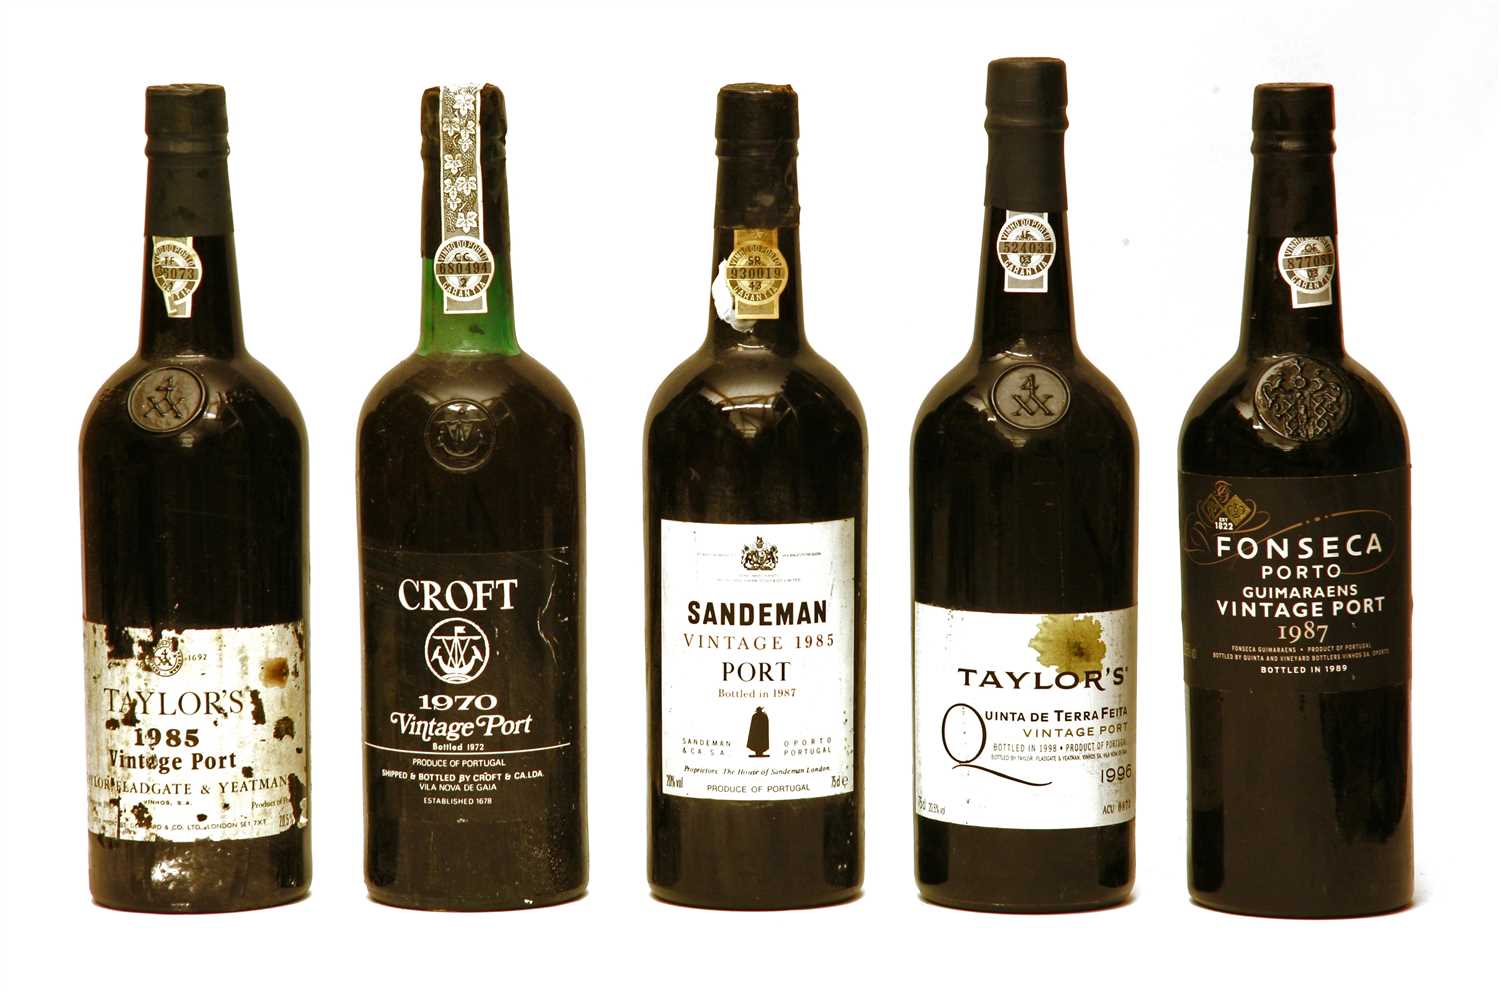 Lot 38 - Assorted port: Croft, 1970; Fonseca 1987, Taylor's, 1985 and 1996, Sandeman, 1985, 5 bottles total